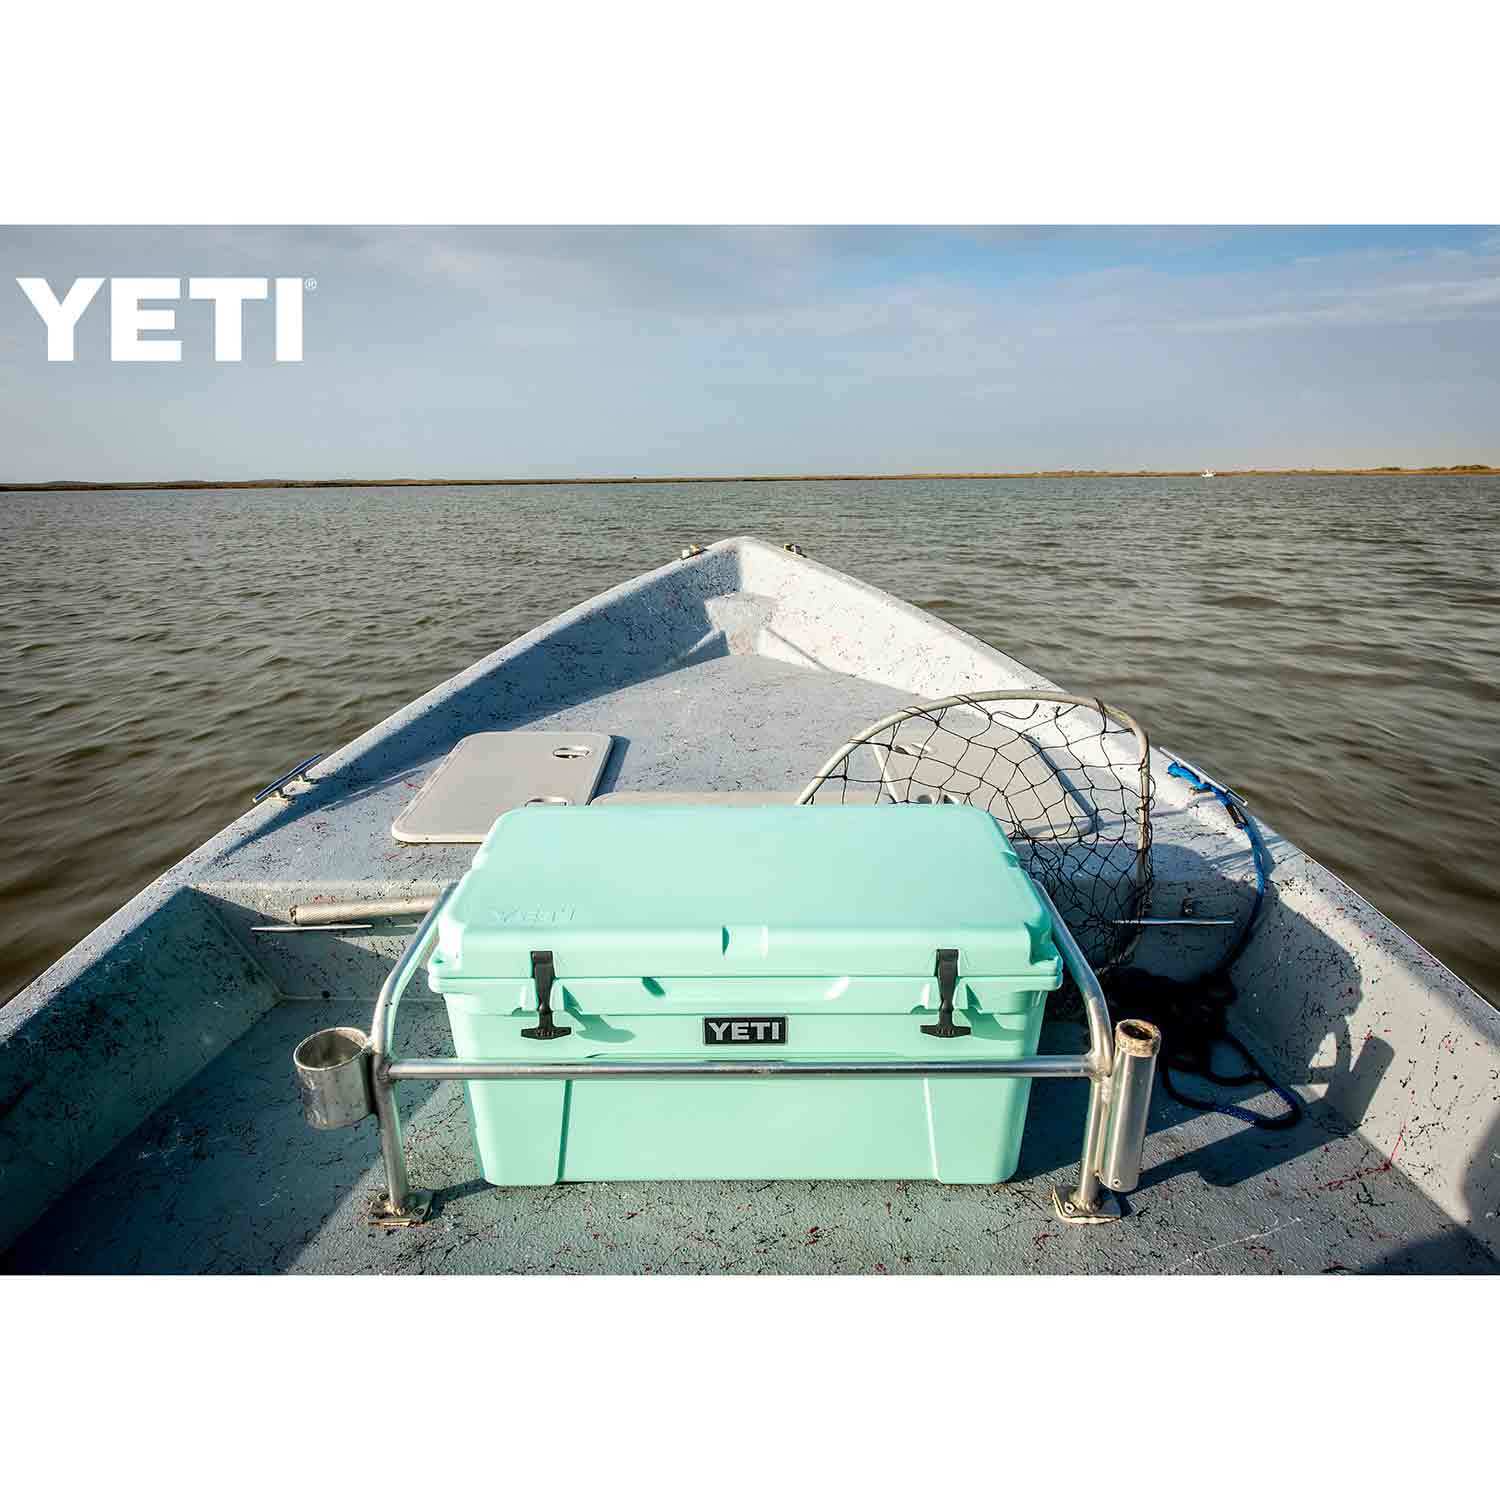 YETI / Tundra 65 Hard Cooler - Seafoam